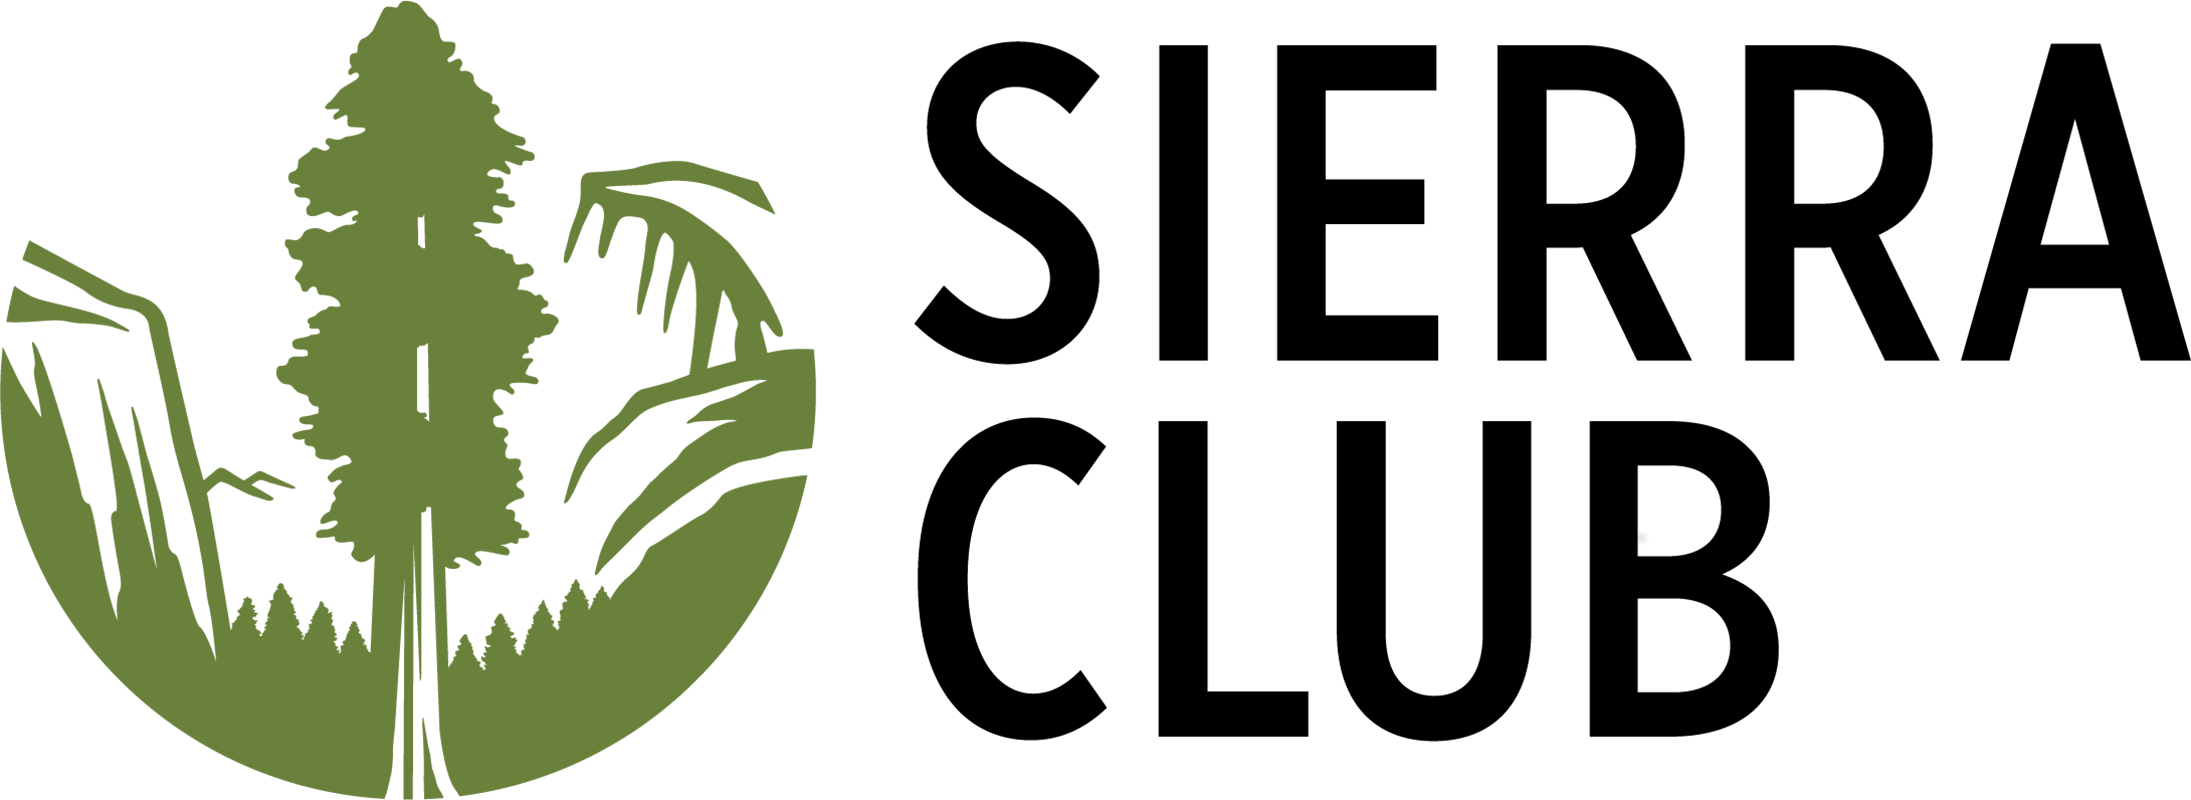 Rockland Sierra Club